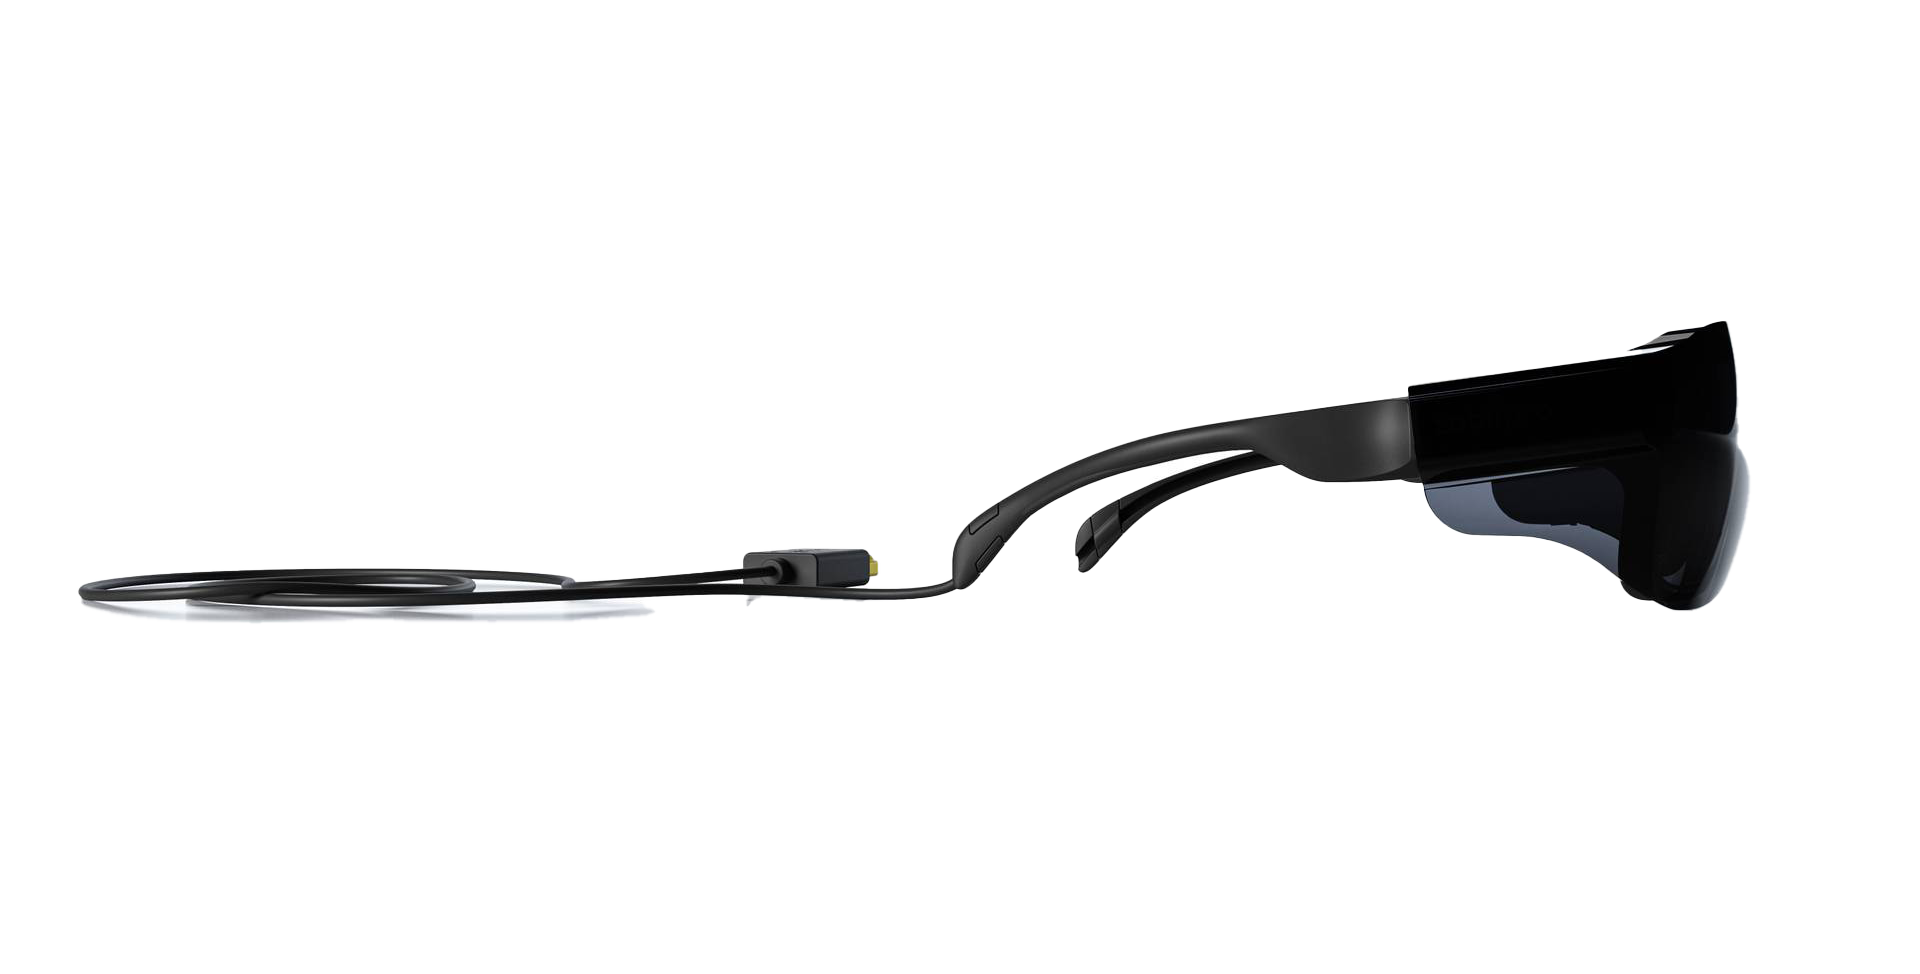 Tobii Pro Glasses 3 eye tracker. Tobii Pro Glasses 3 eye tracker